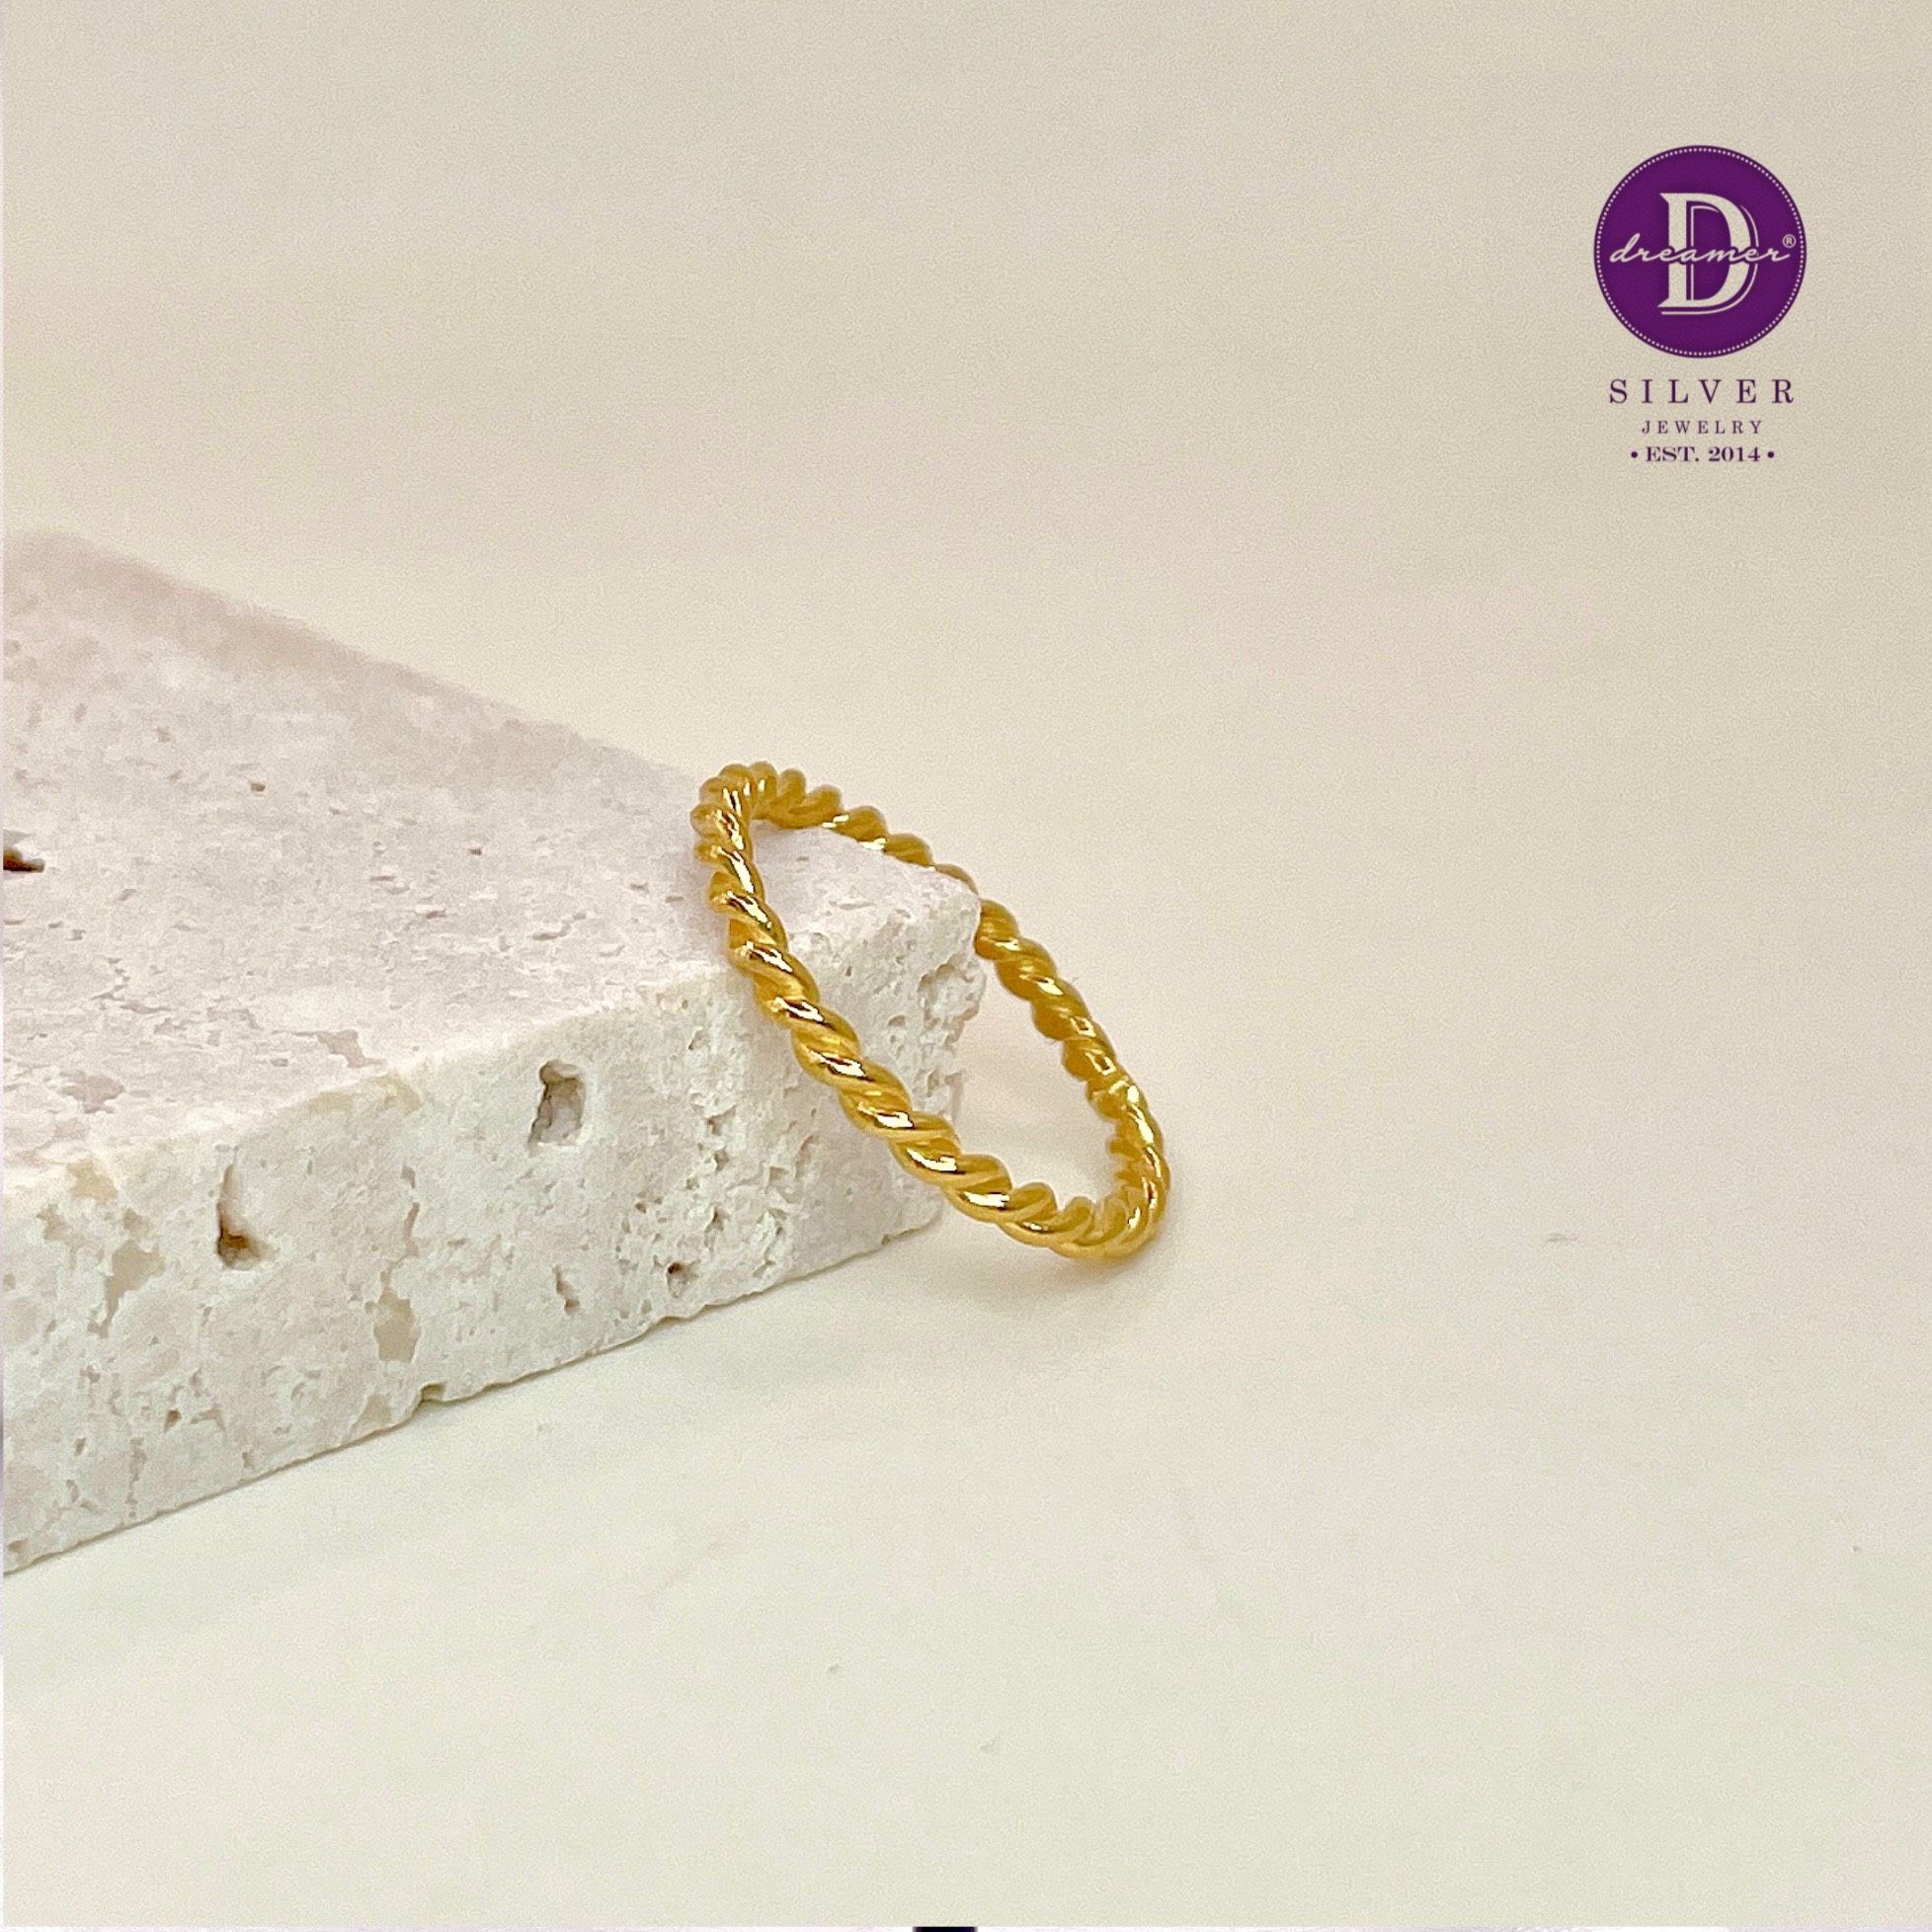  Twist Minimal Ring - Gold Plated Ring - Nhẫn Trơn Xoắn - 1003NT 